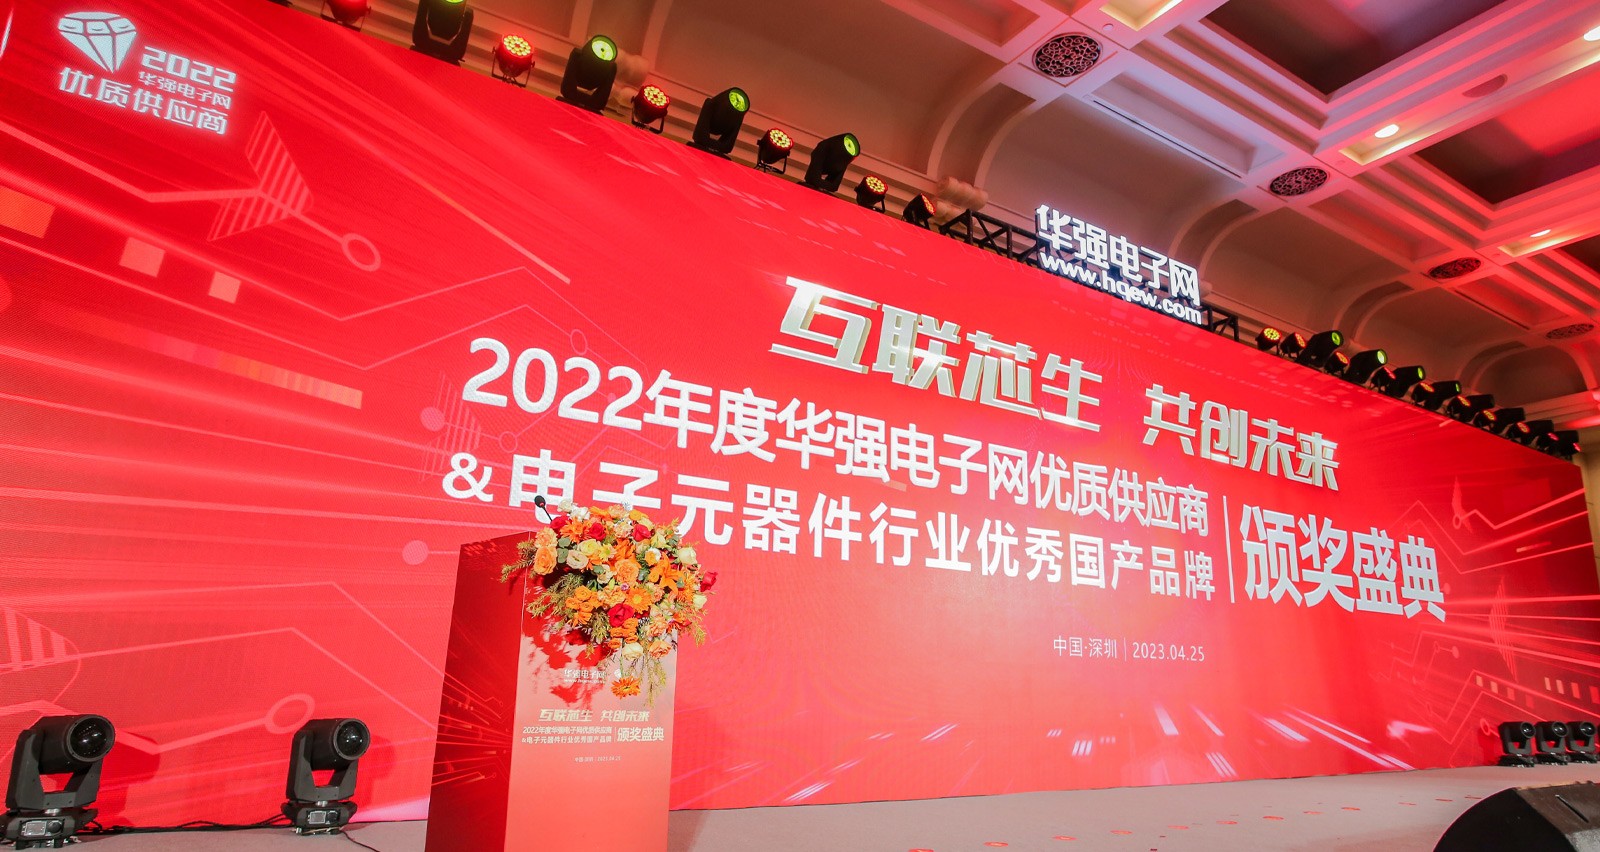 里陽半導體榮獲「2022年度電子元器件行業優秀國產品牌企業專業提名獎」